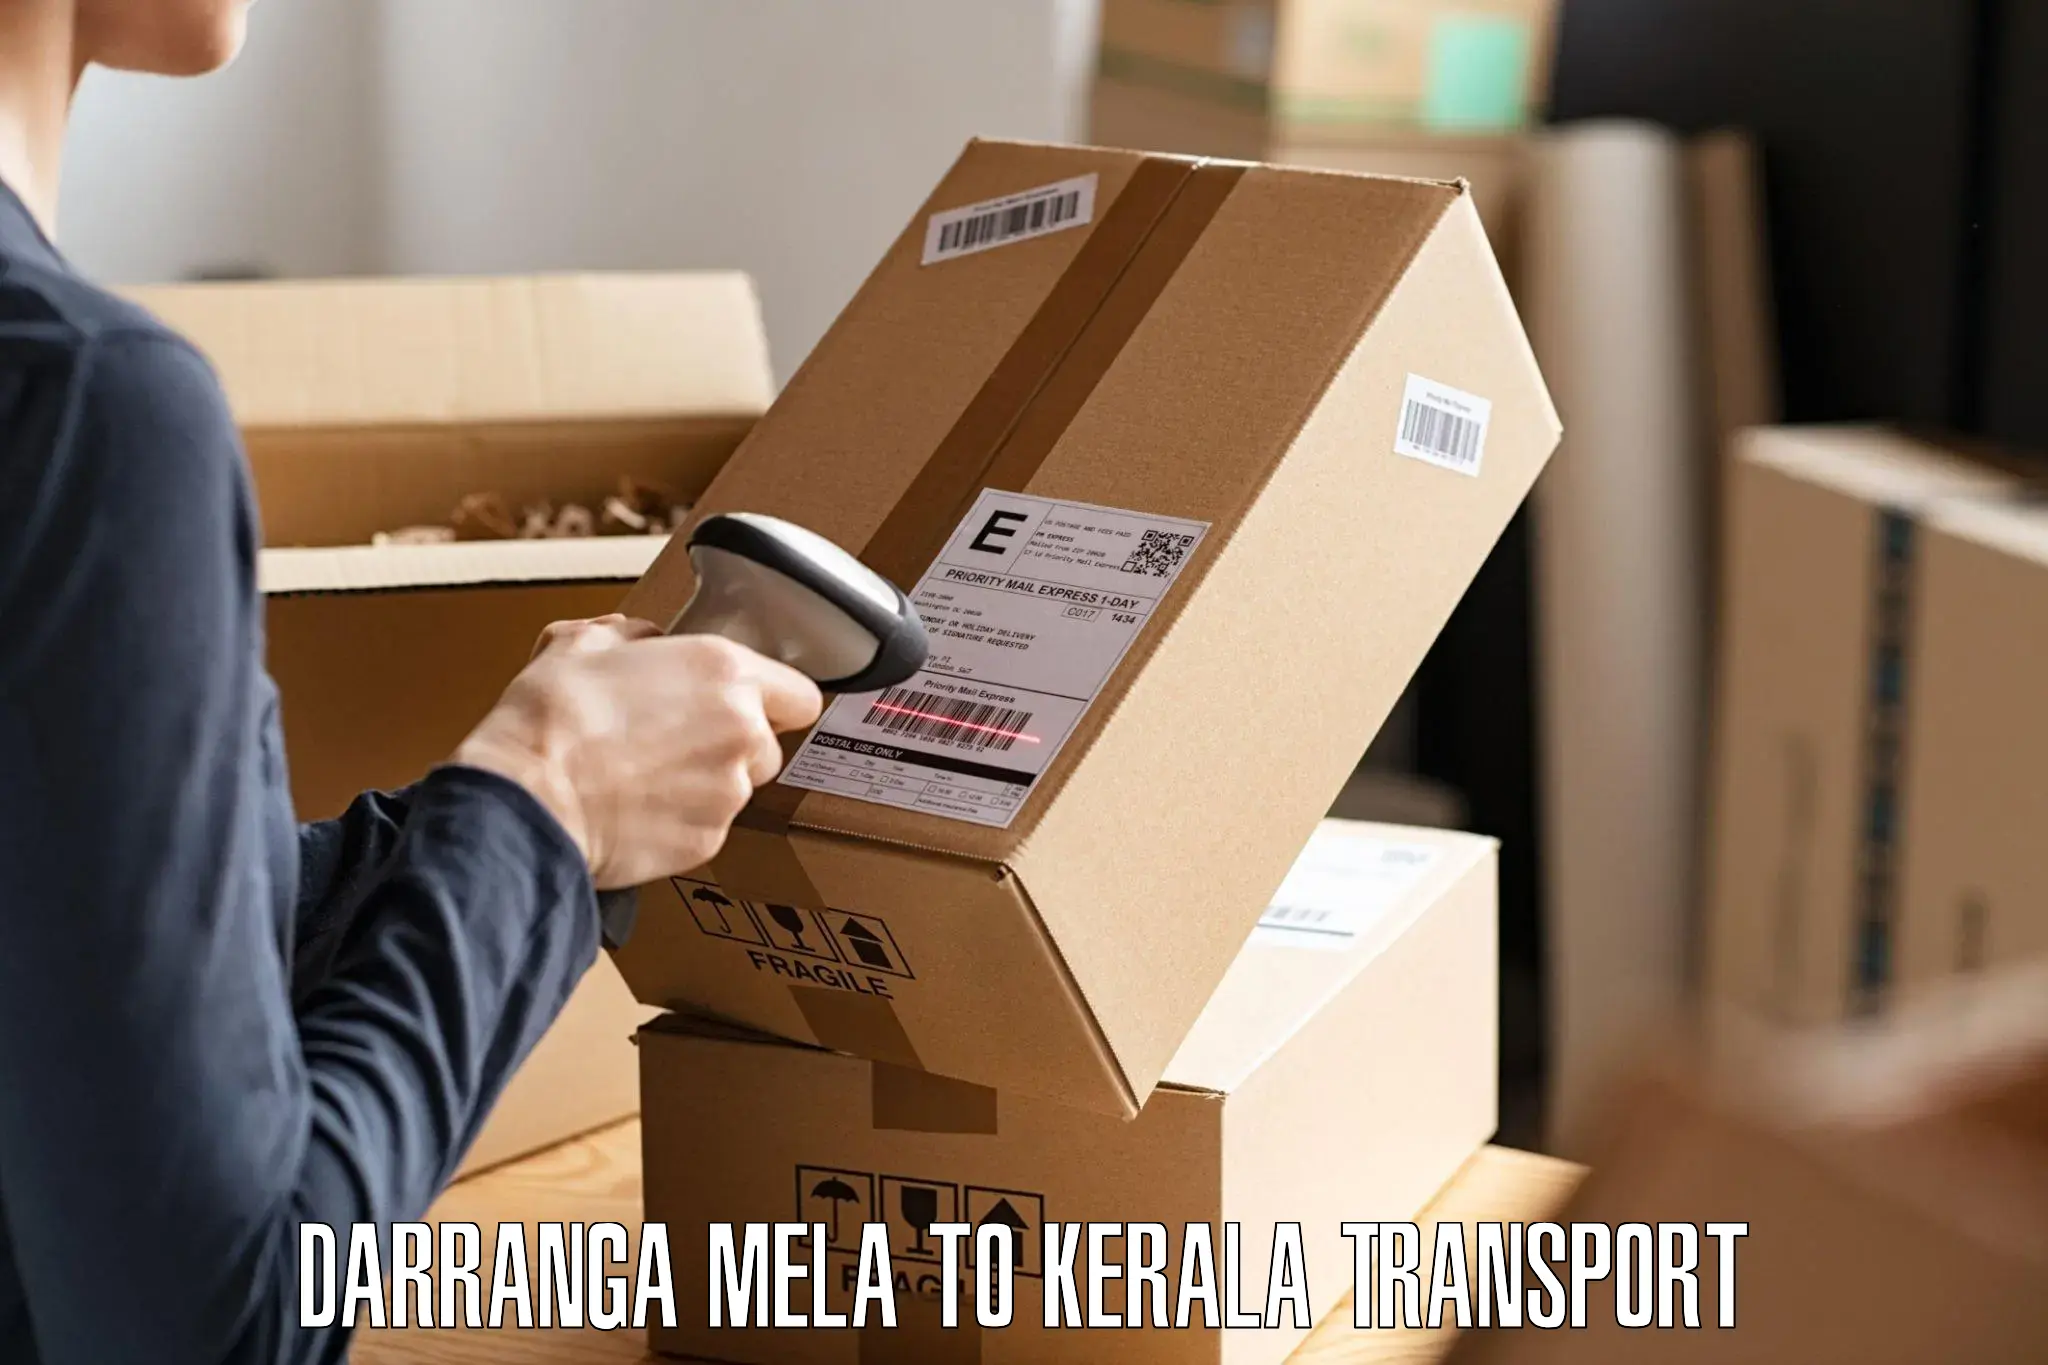 Shipping services Darranga Mela to Poojapura